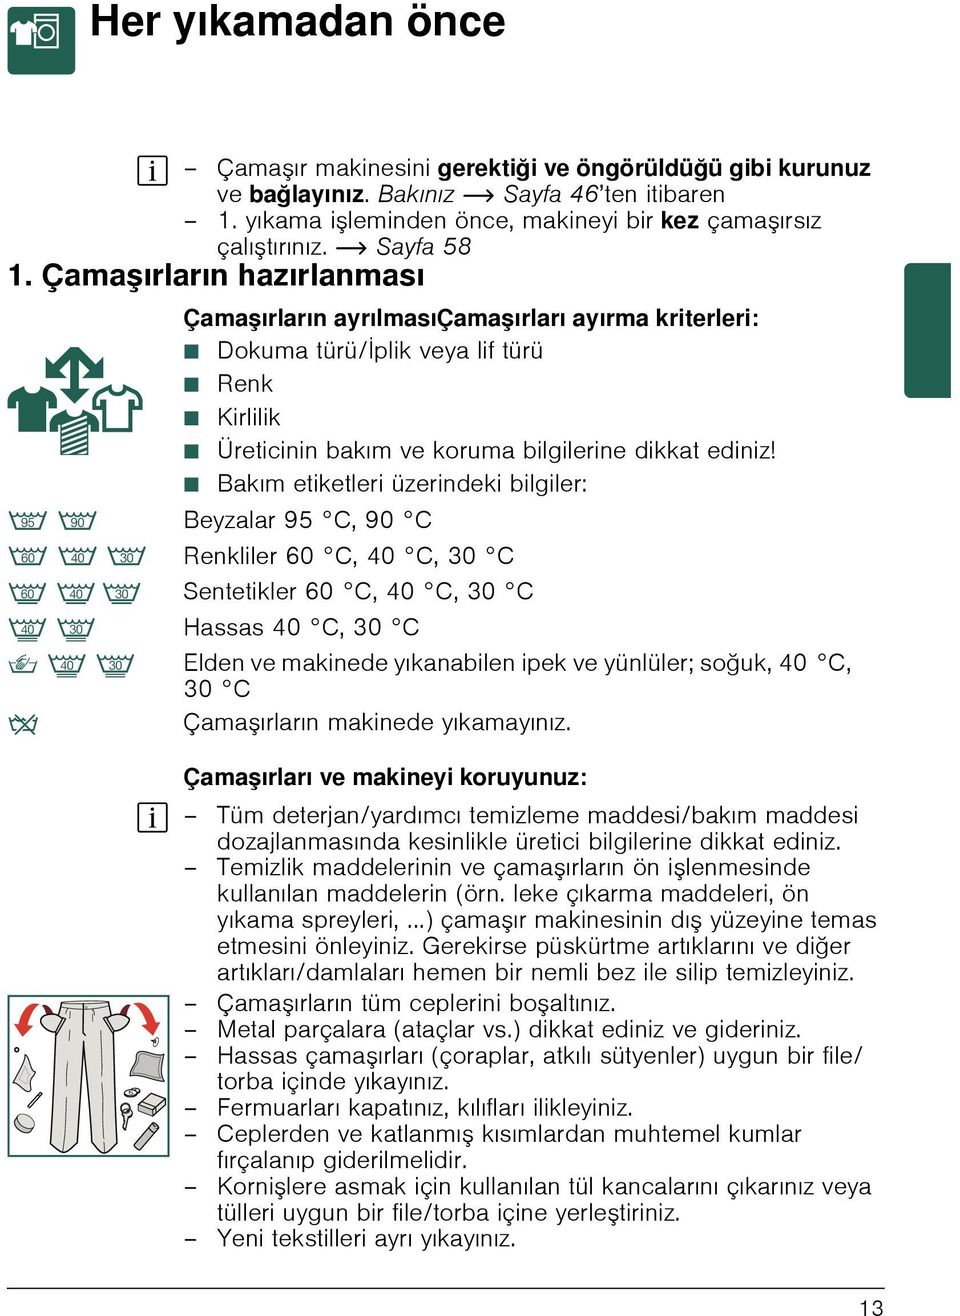 Çamaşırların hazırlanması Çamaşırların ayrılmasıçamaşırları ayırma kriterleri: Ø Dokuma türü/iplik veya lif türü Ø Renk Ø Kirlilik Ø Üreticinin bakım ve koruma bilgilerine dikkat ediniz!